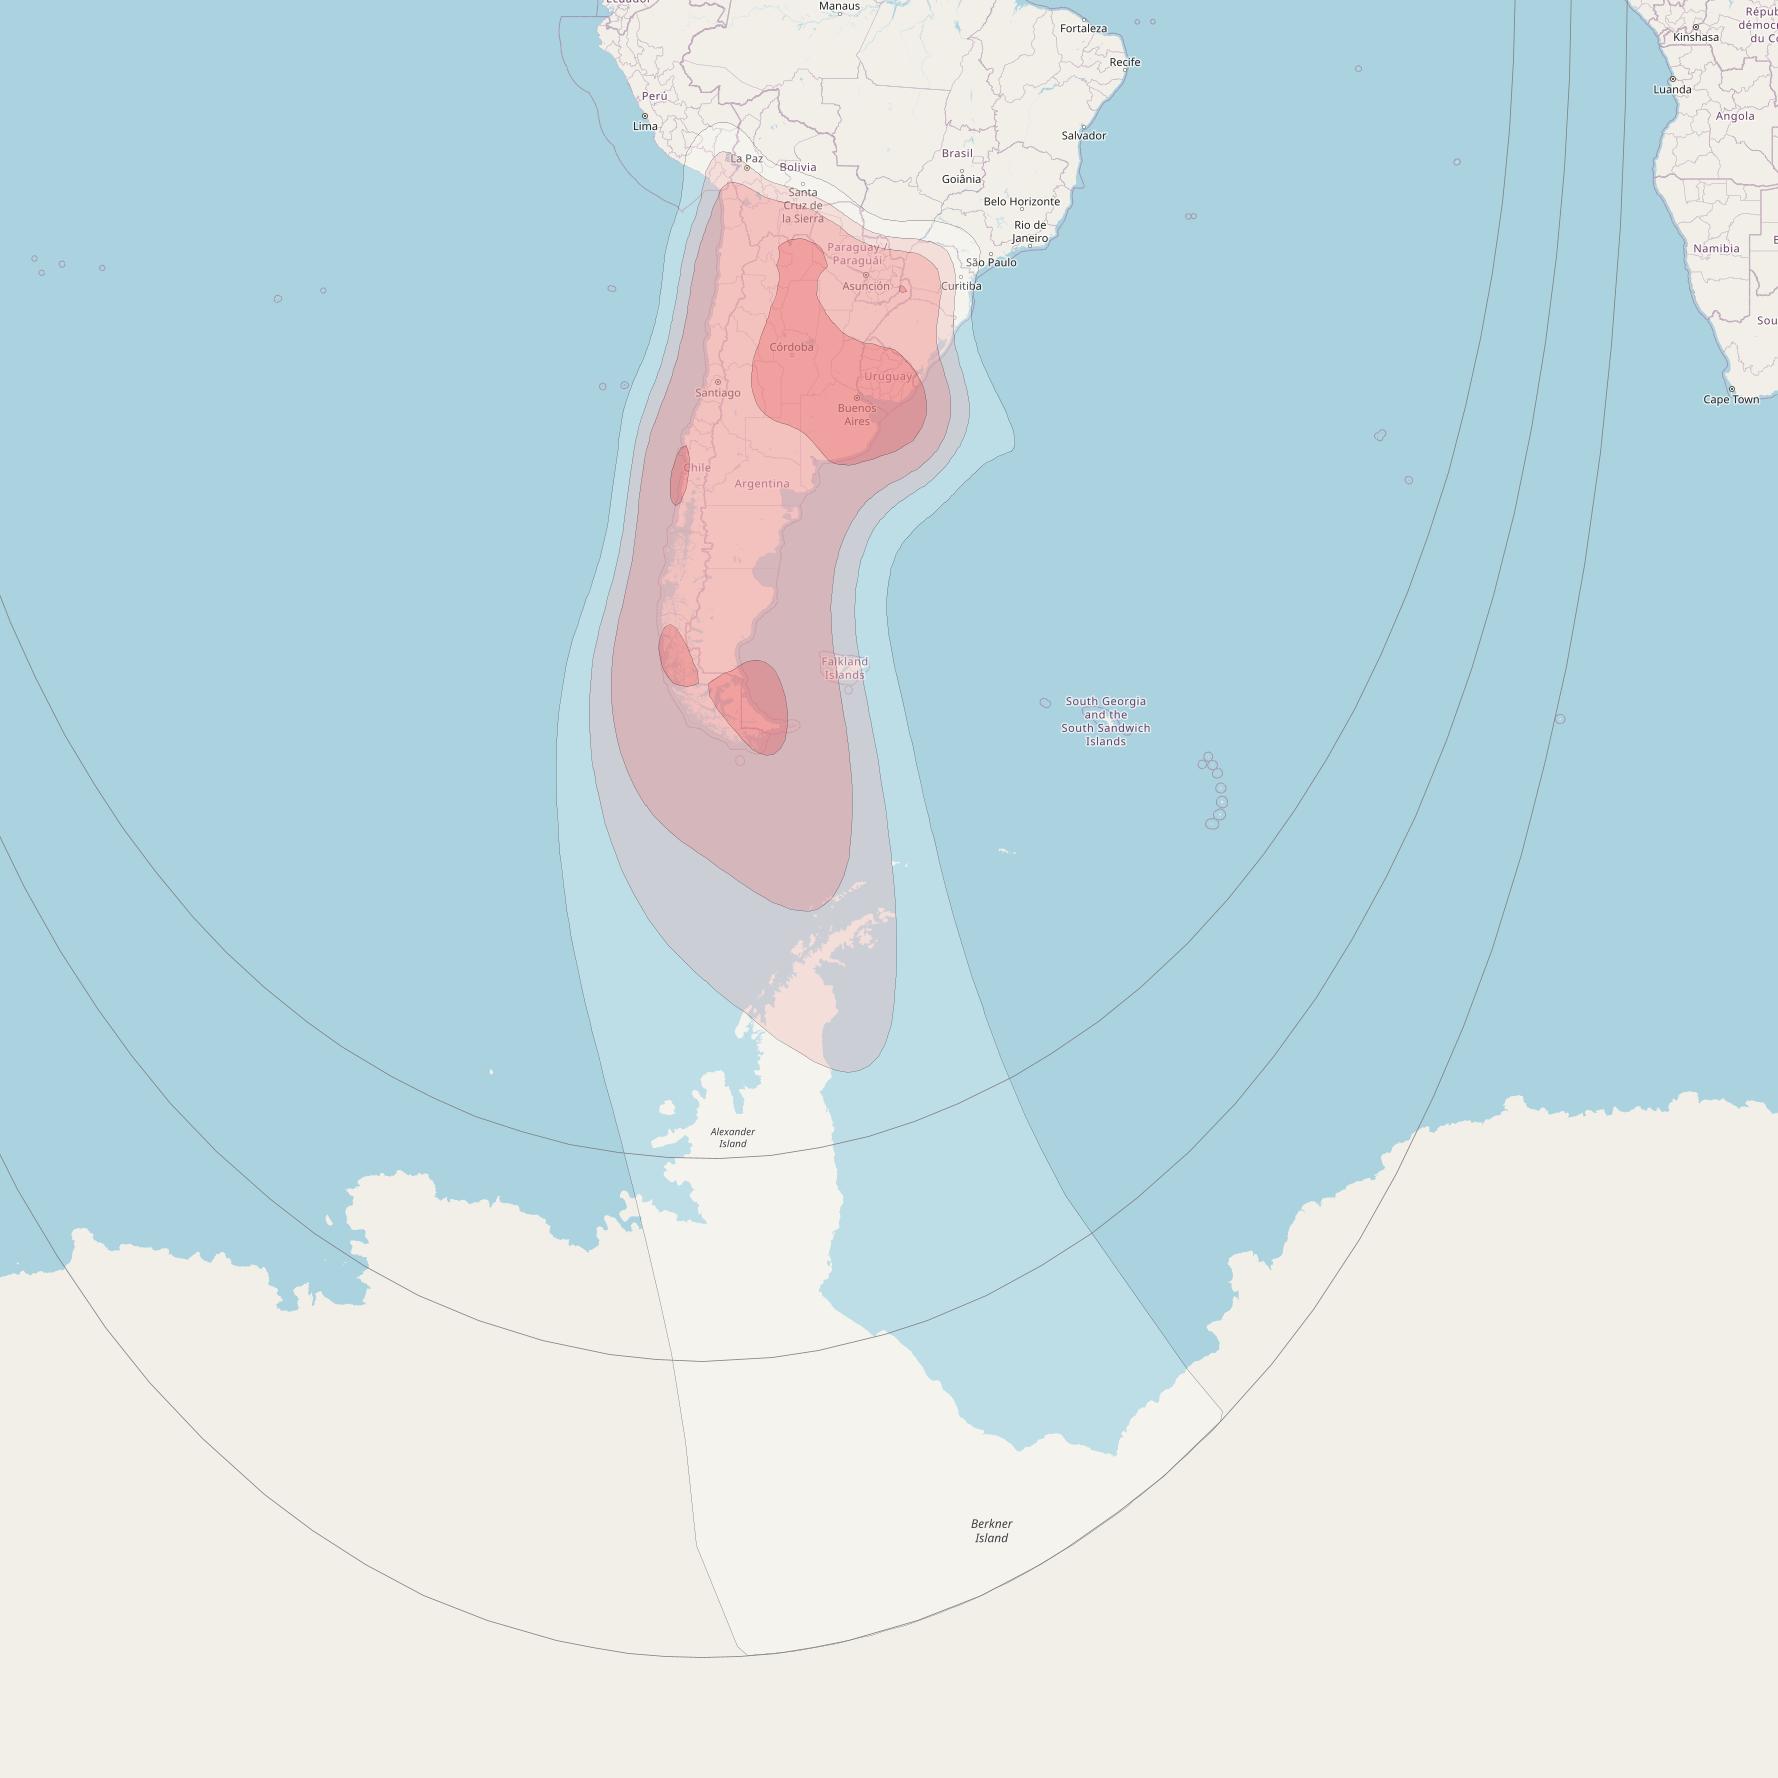 ARSAT 1 at 72° W downlink Ku-band Argentina beam coverage map